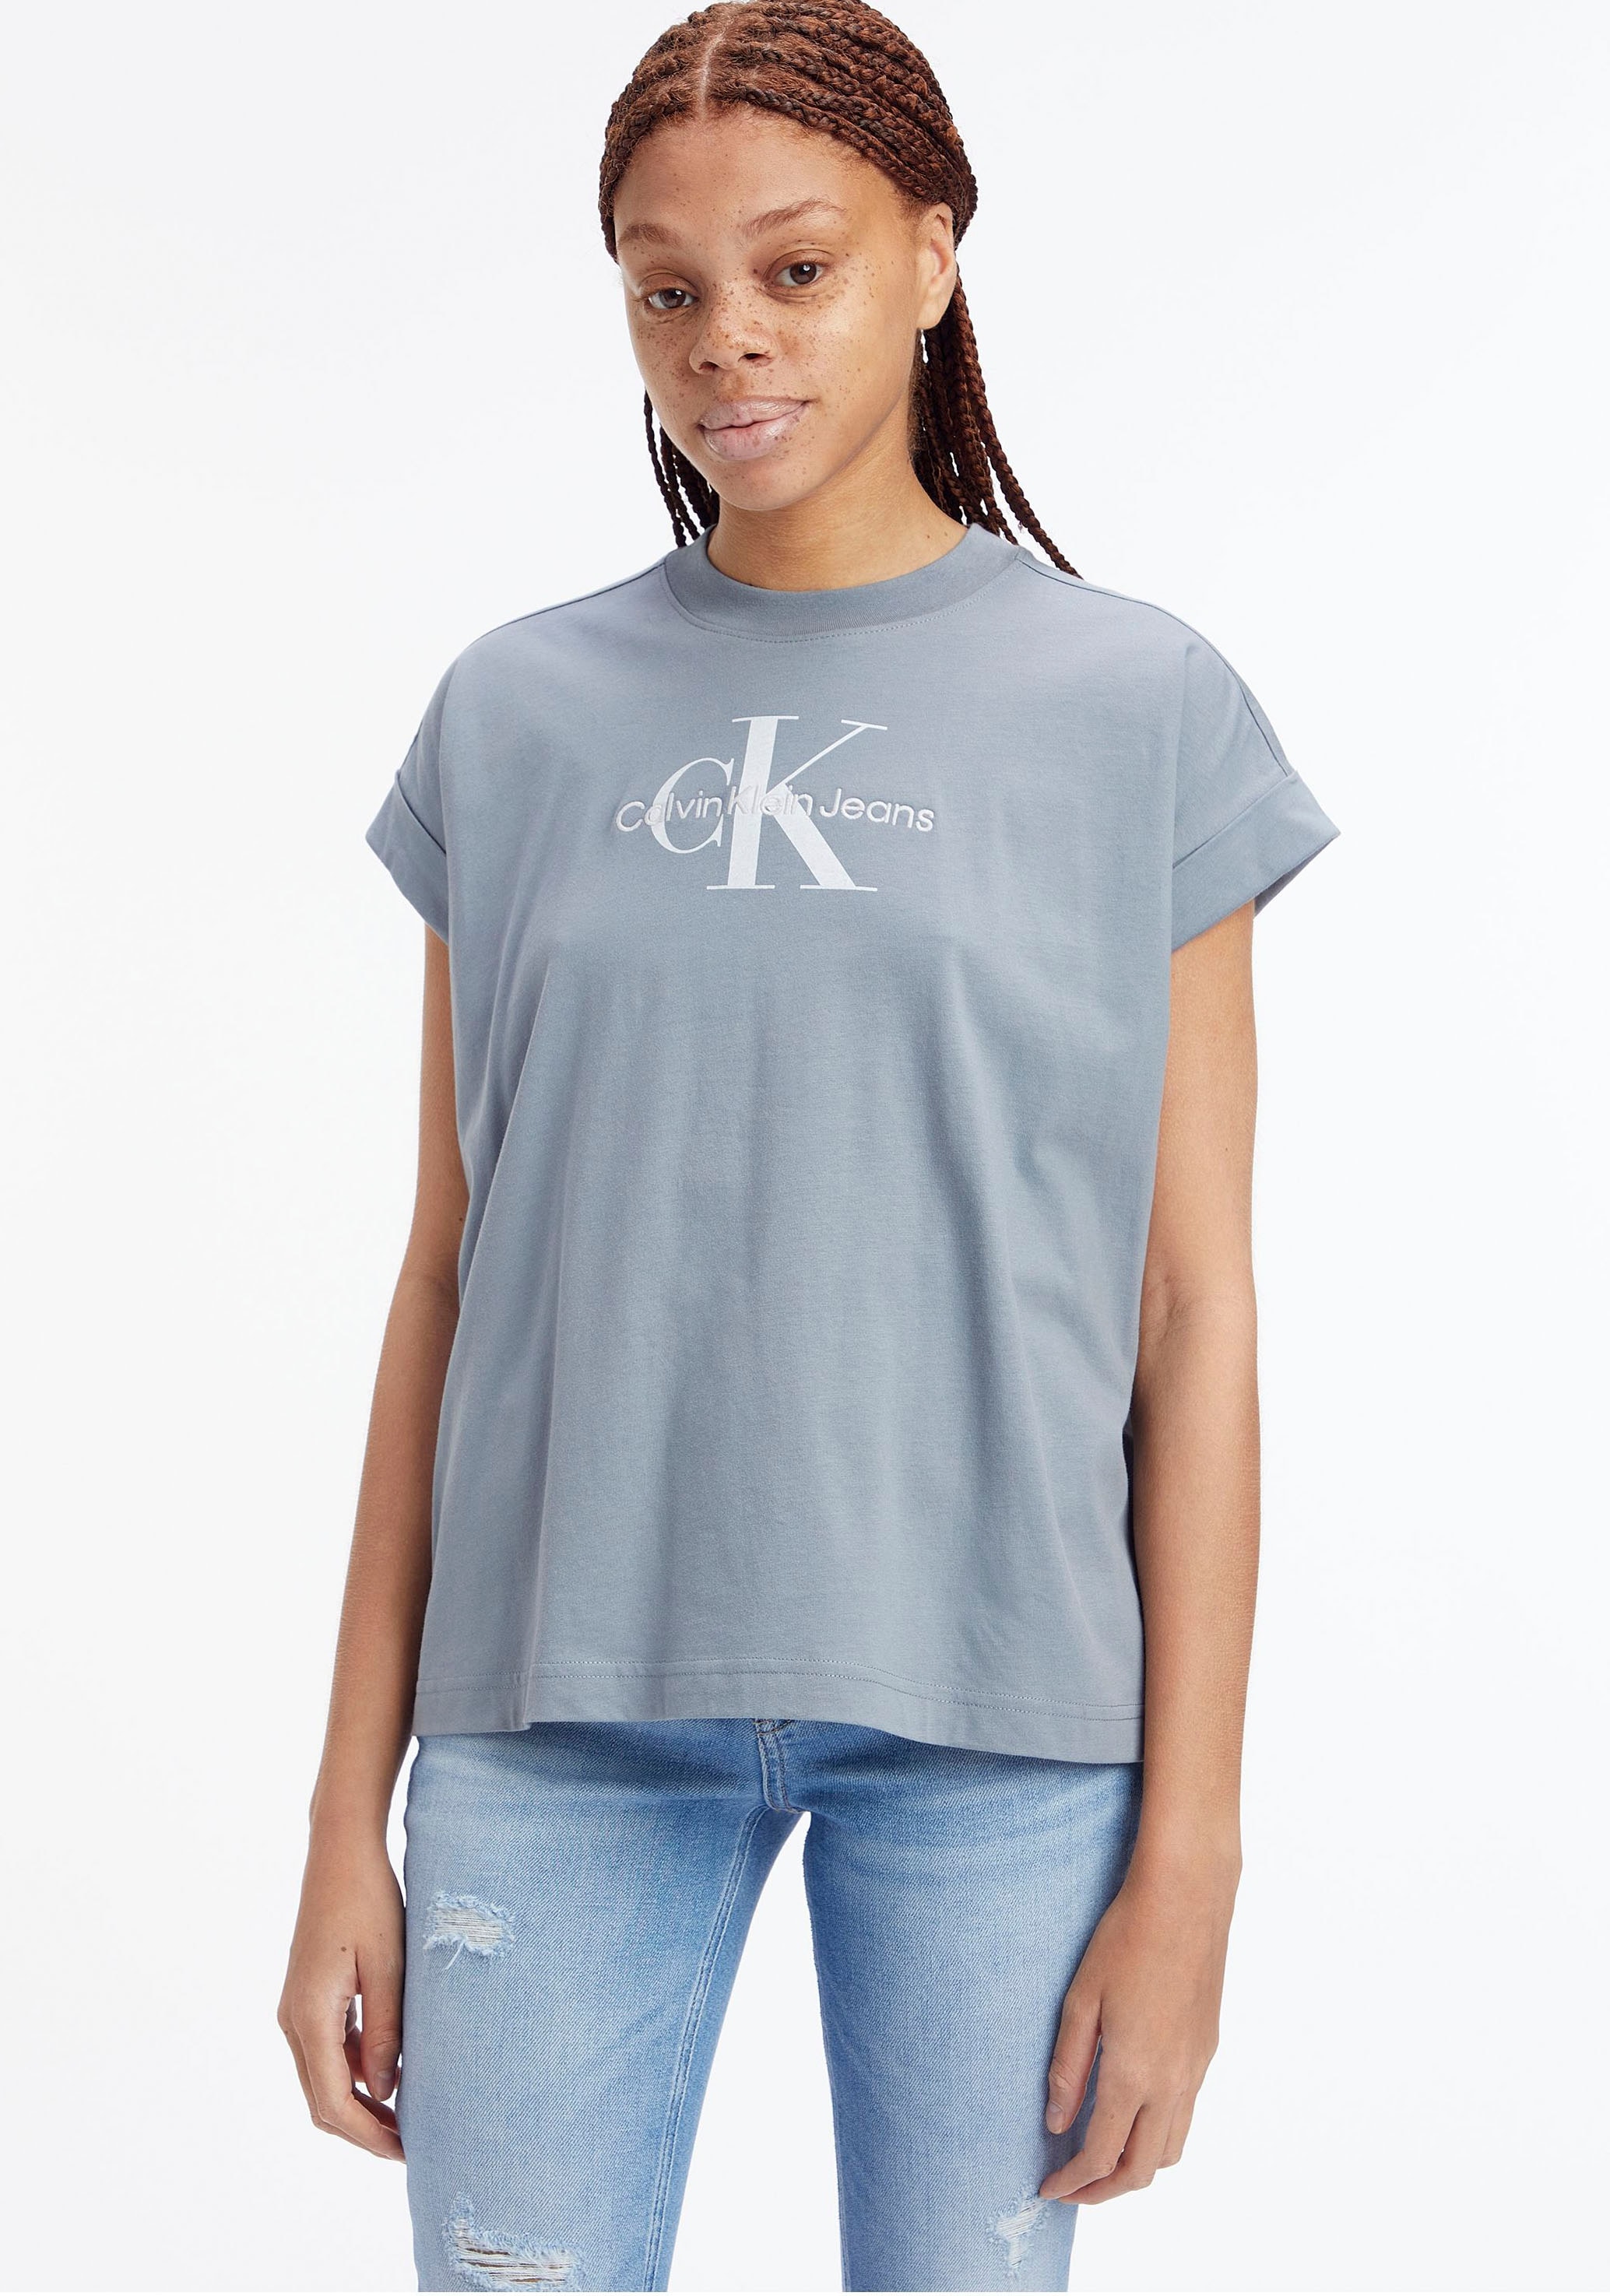 Calvin Klein Jeans T-Shirt, mit Umschlagbund breitem shoppen an den Ärmeln